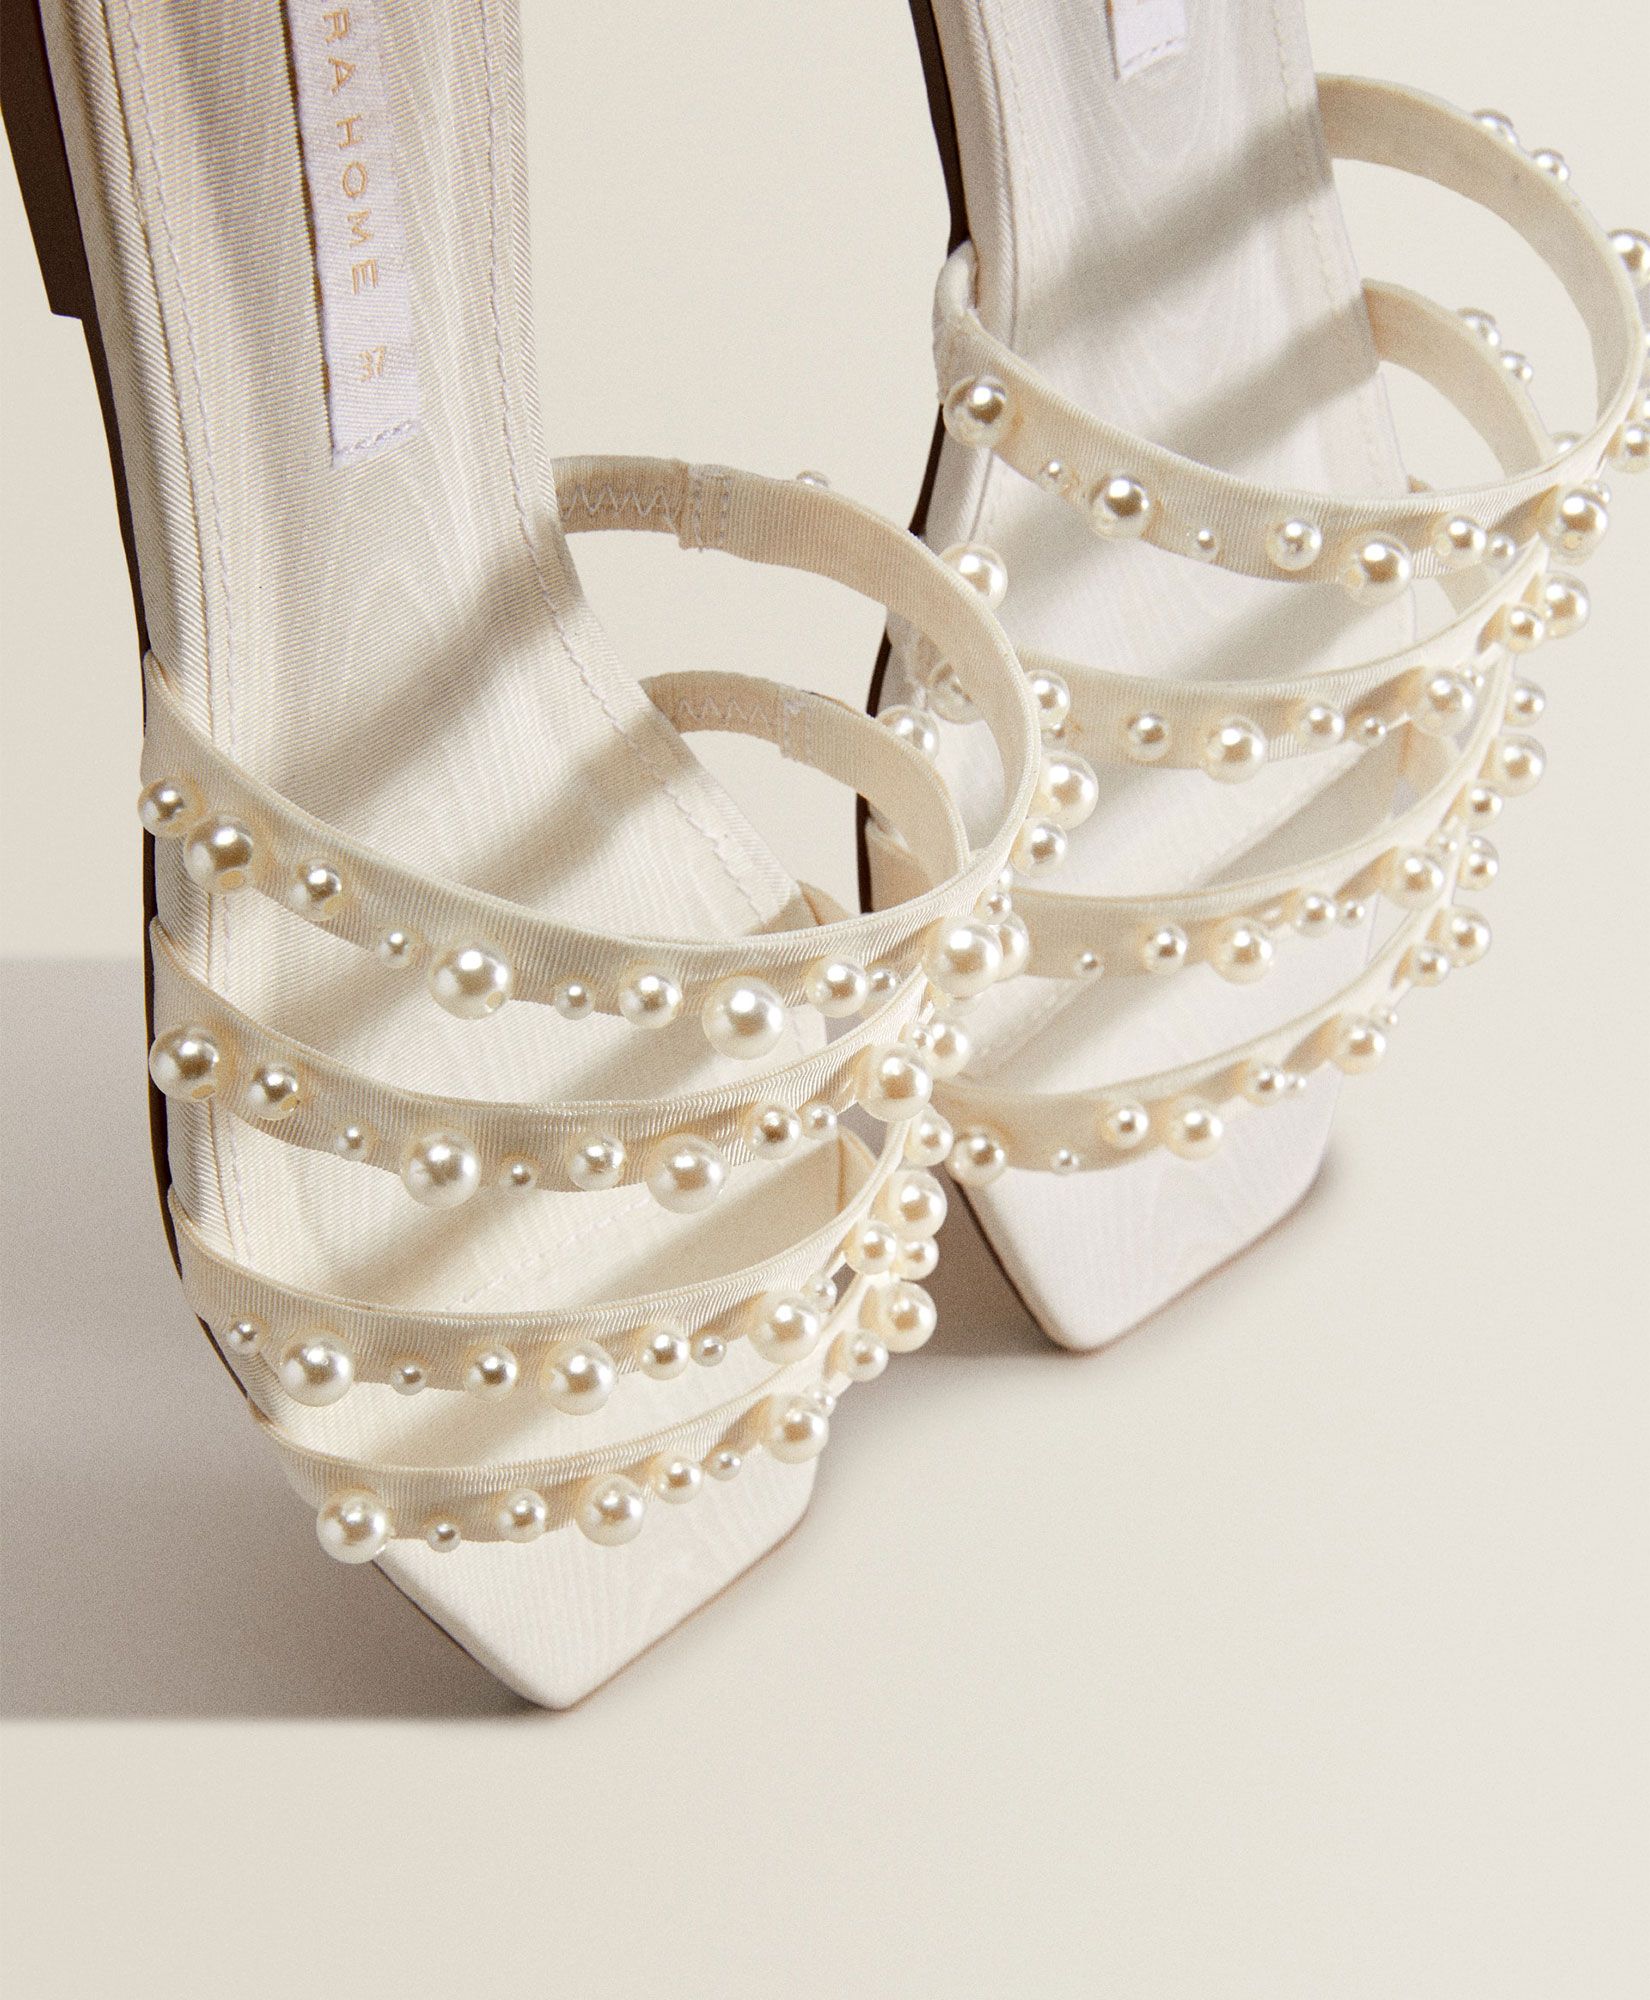 sandalias planas de perlas de Zara Home son bonitas